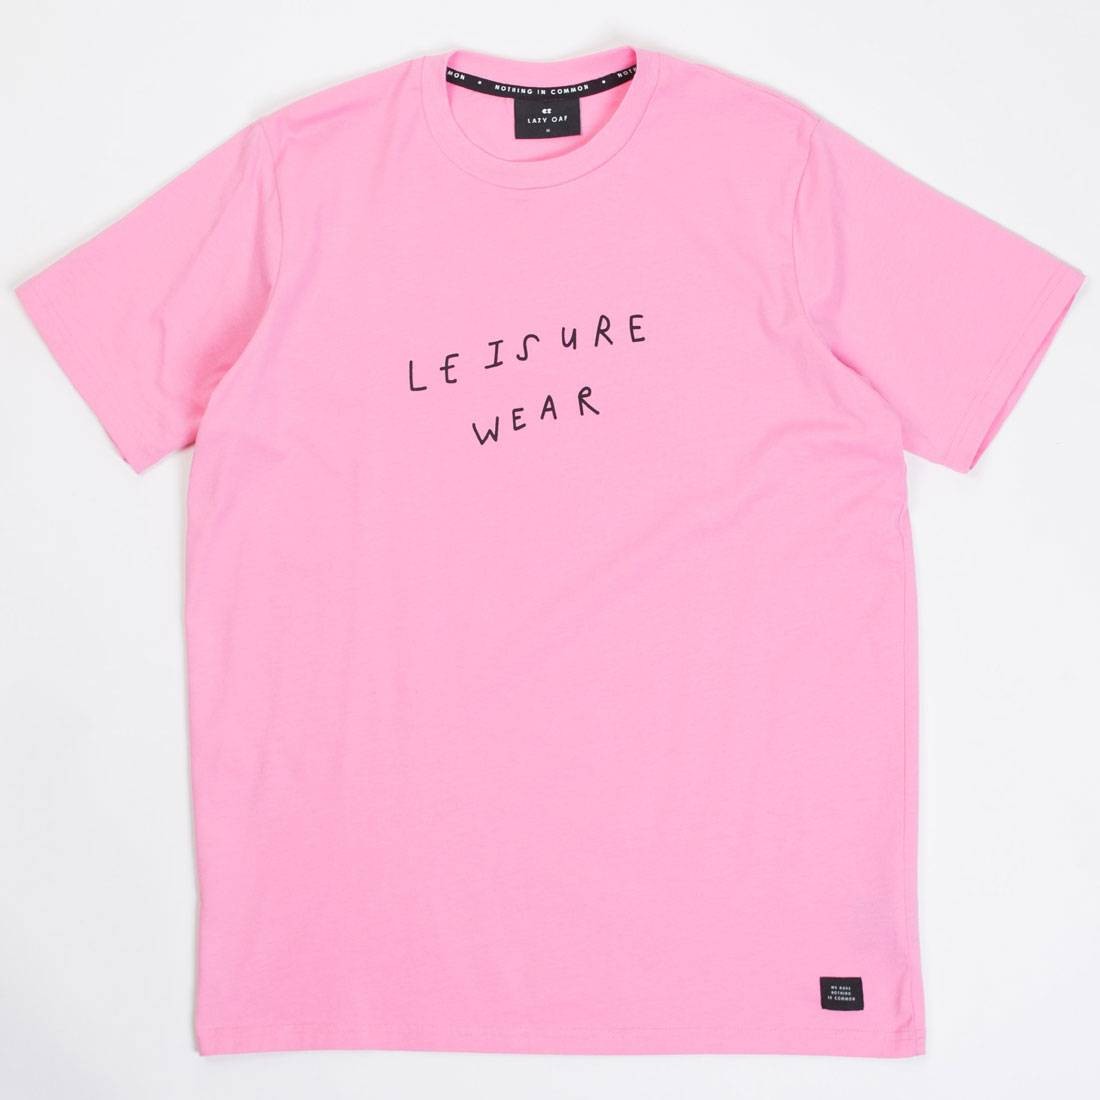 Lazy Oaf Men Leisure Wear Tee (pink)